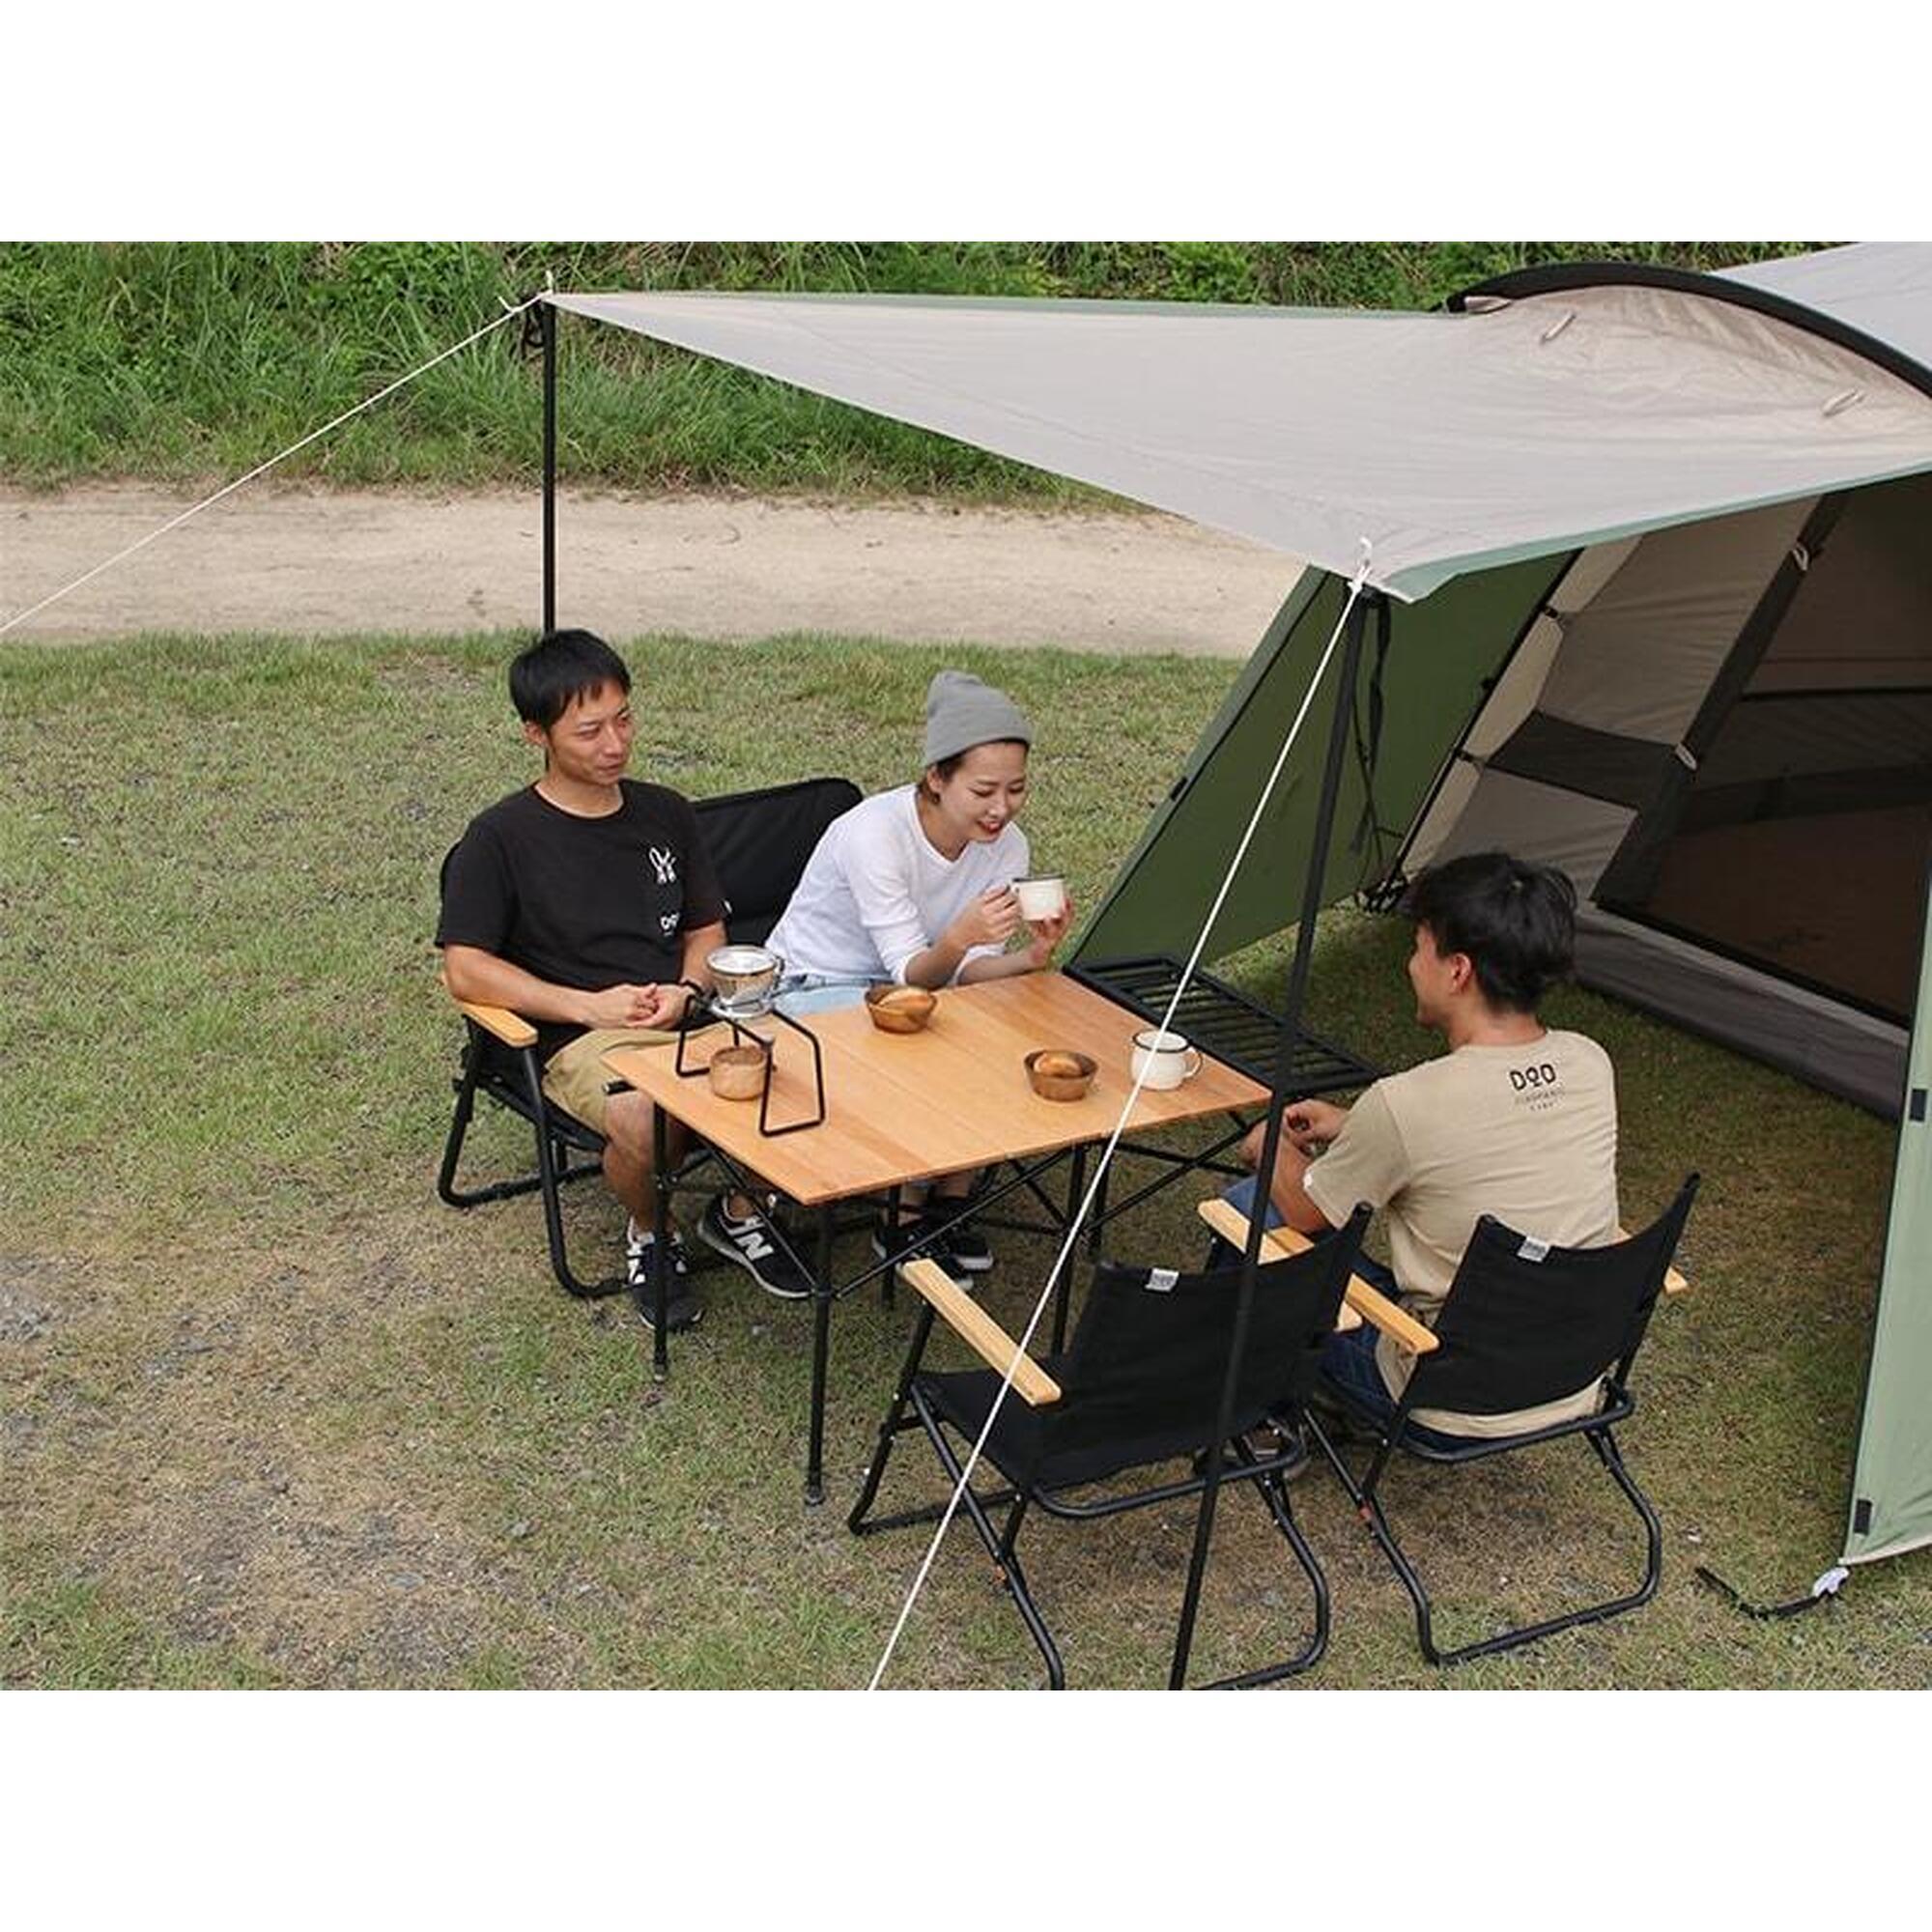 THE TENT (L) T5-624-KH 5 Person Camping Tent - Tan/Khaki